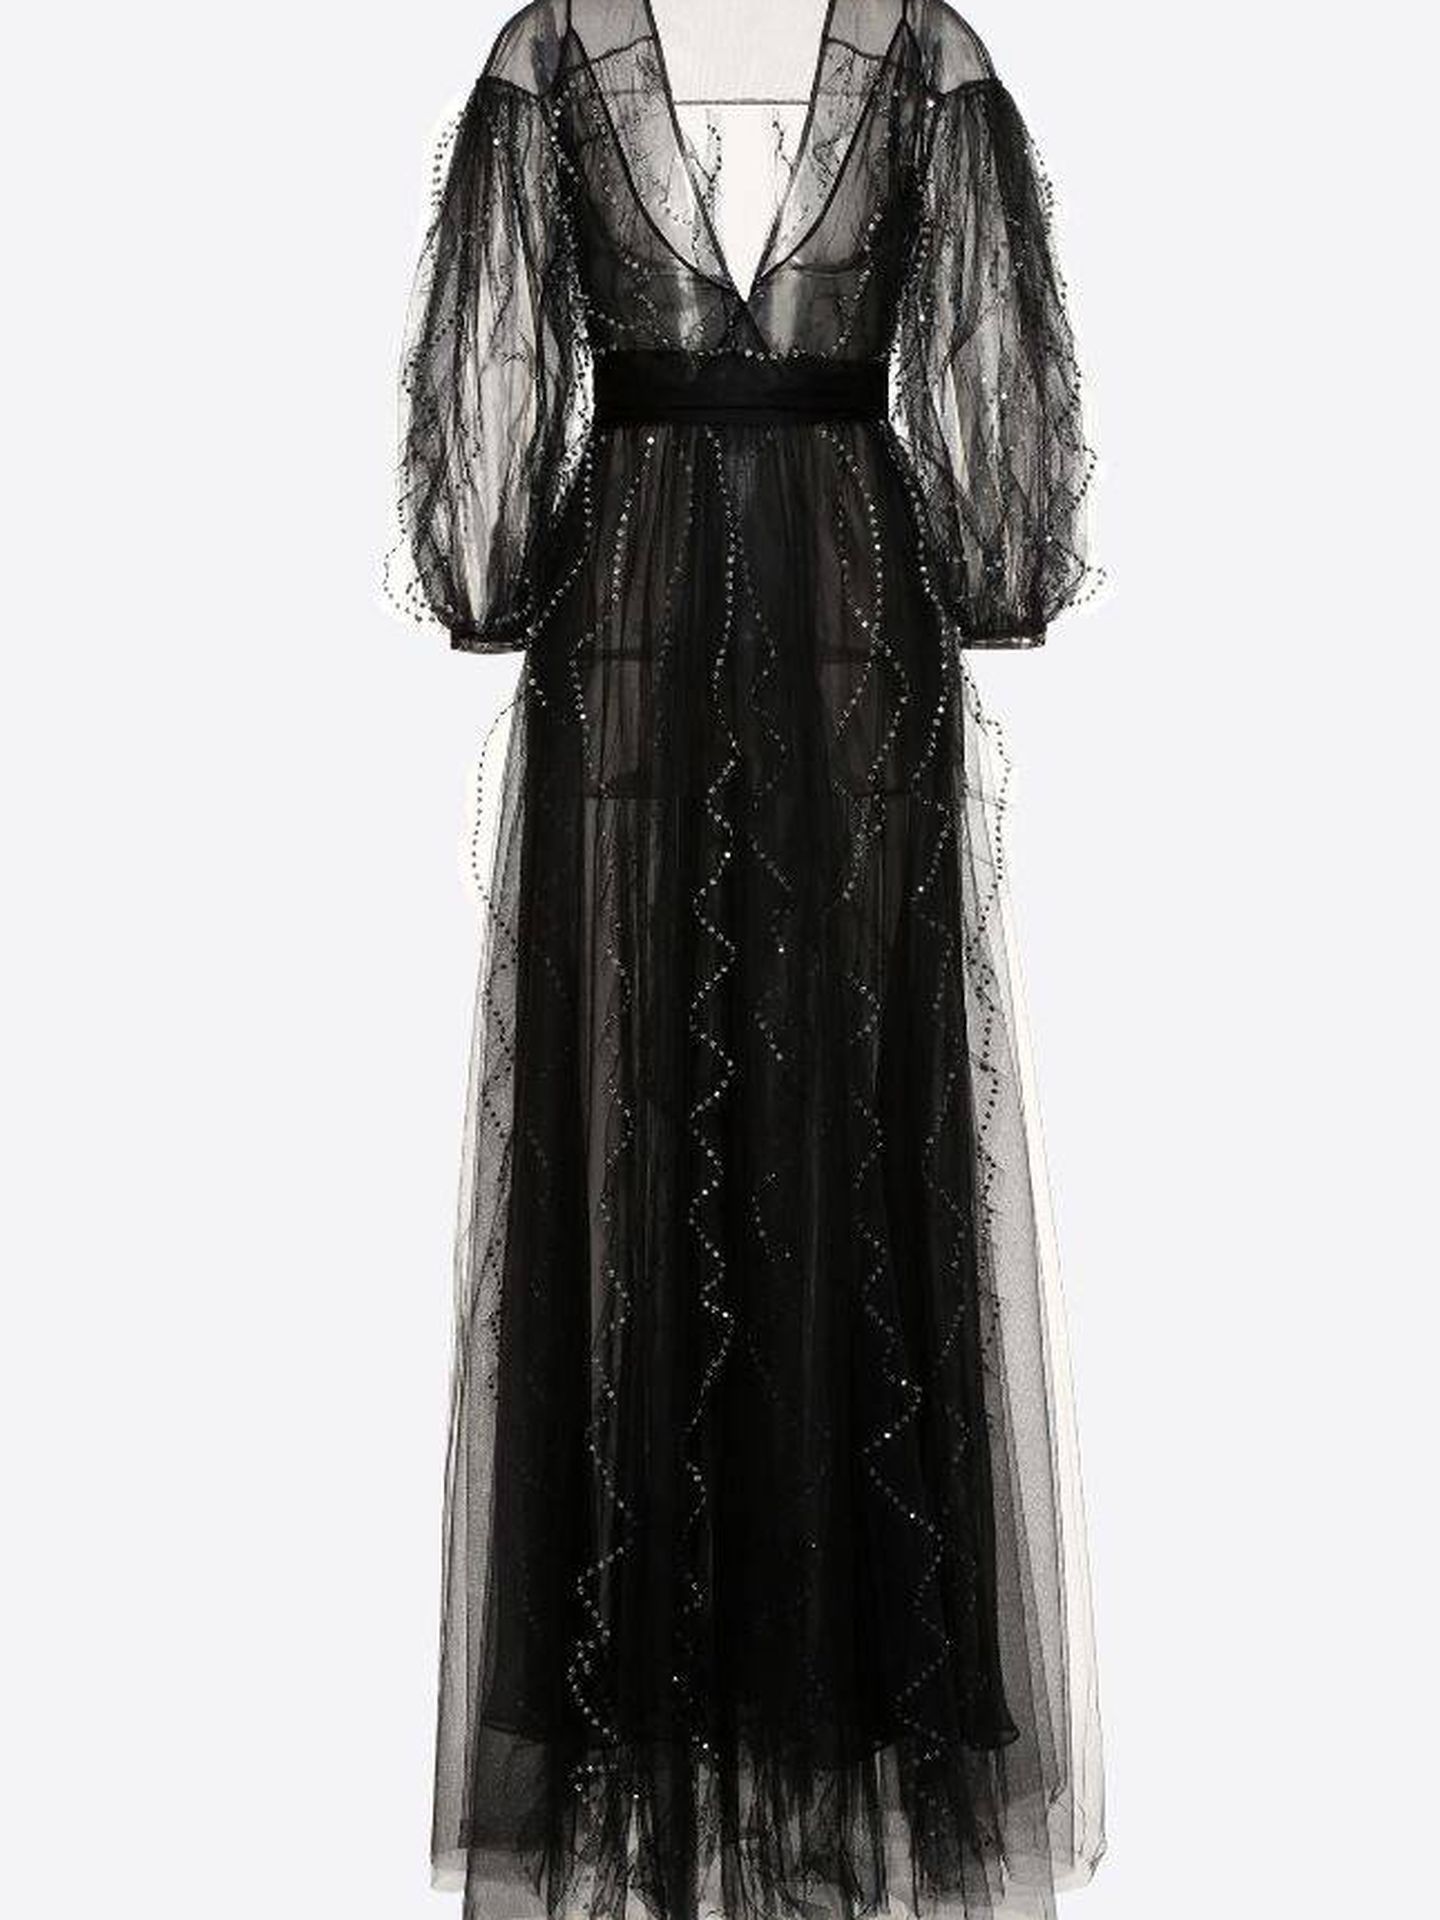 El vestido de Meghan se puede comprar en distintas webs.